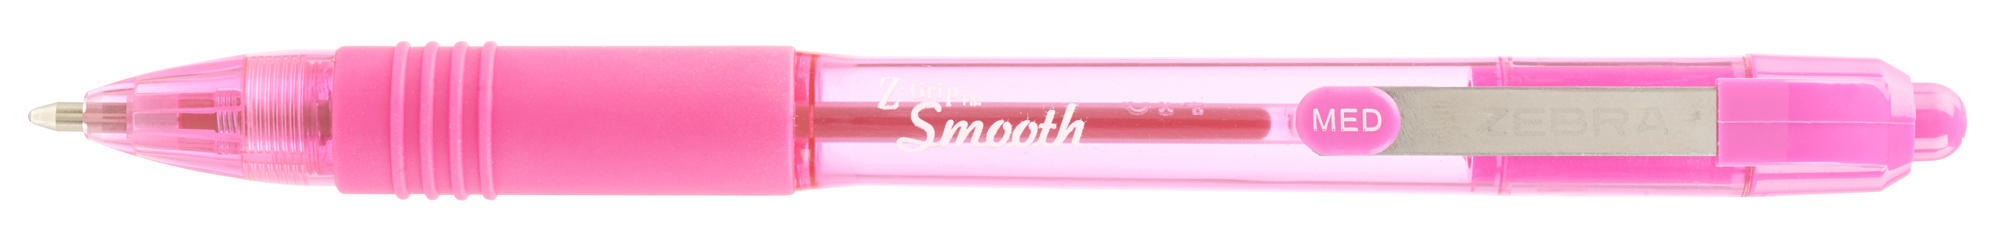 Ручка шариковая автомат Zebra Z-grip Smooth, розовый, пластик (22567)